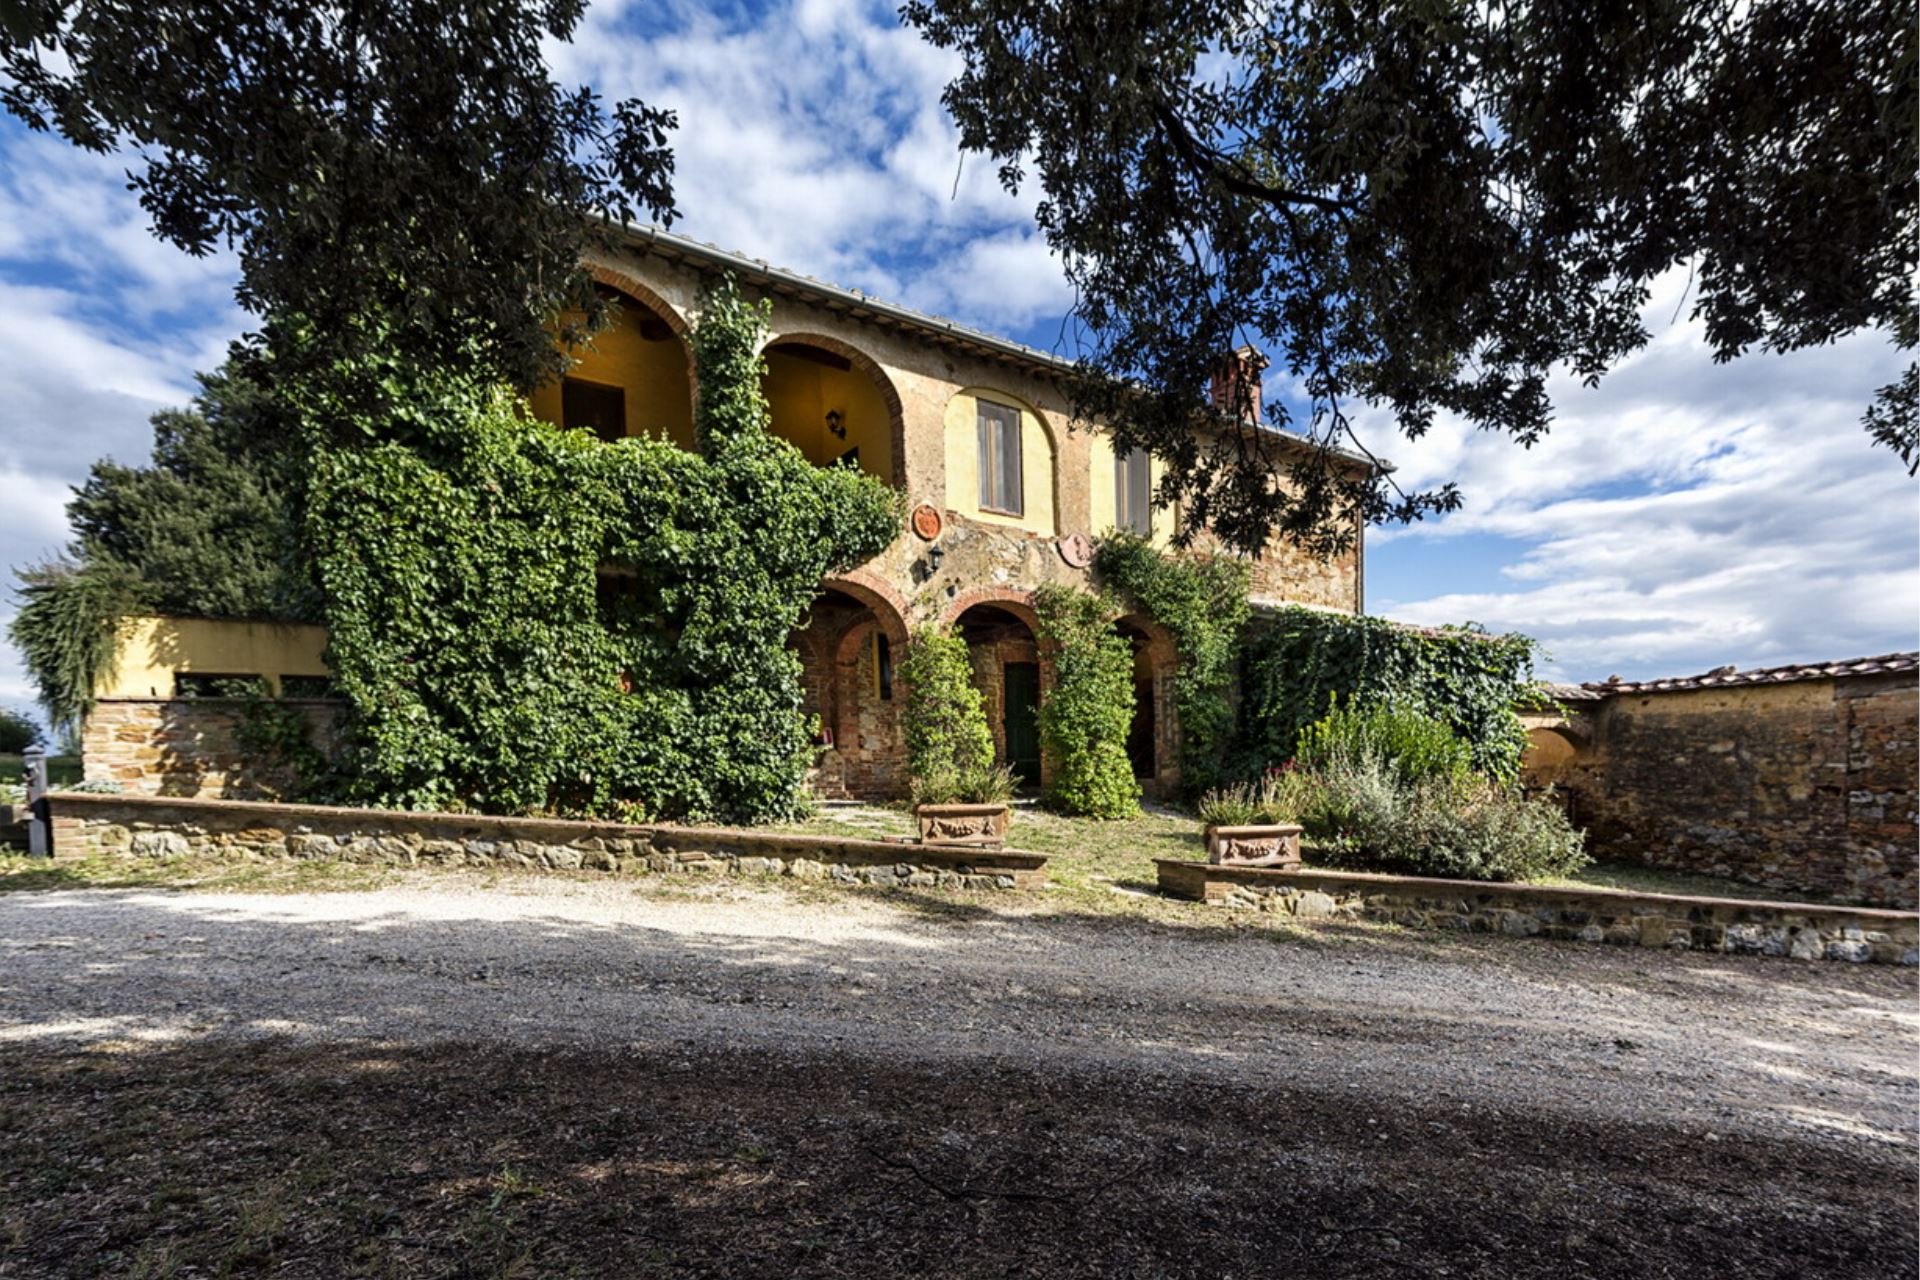 Villa Donatella